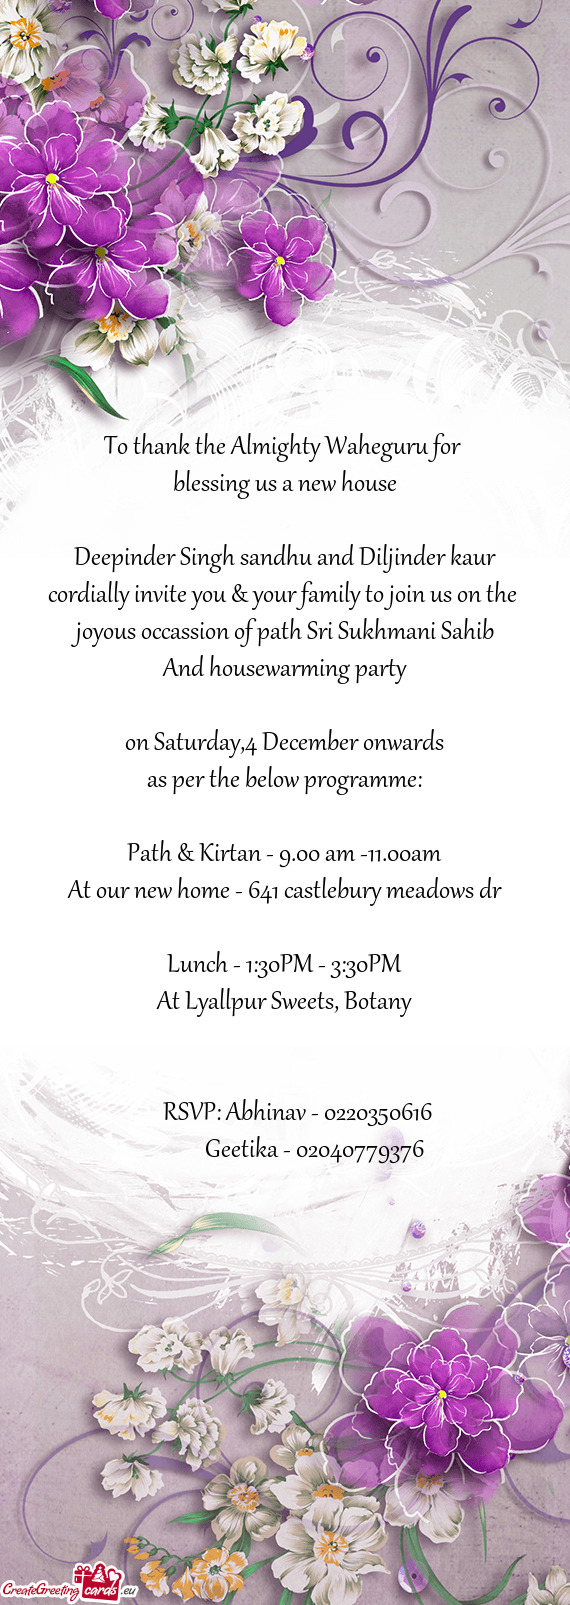 Deepinder Singh sandhu and Diljinder kaur